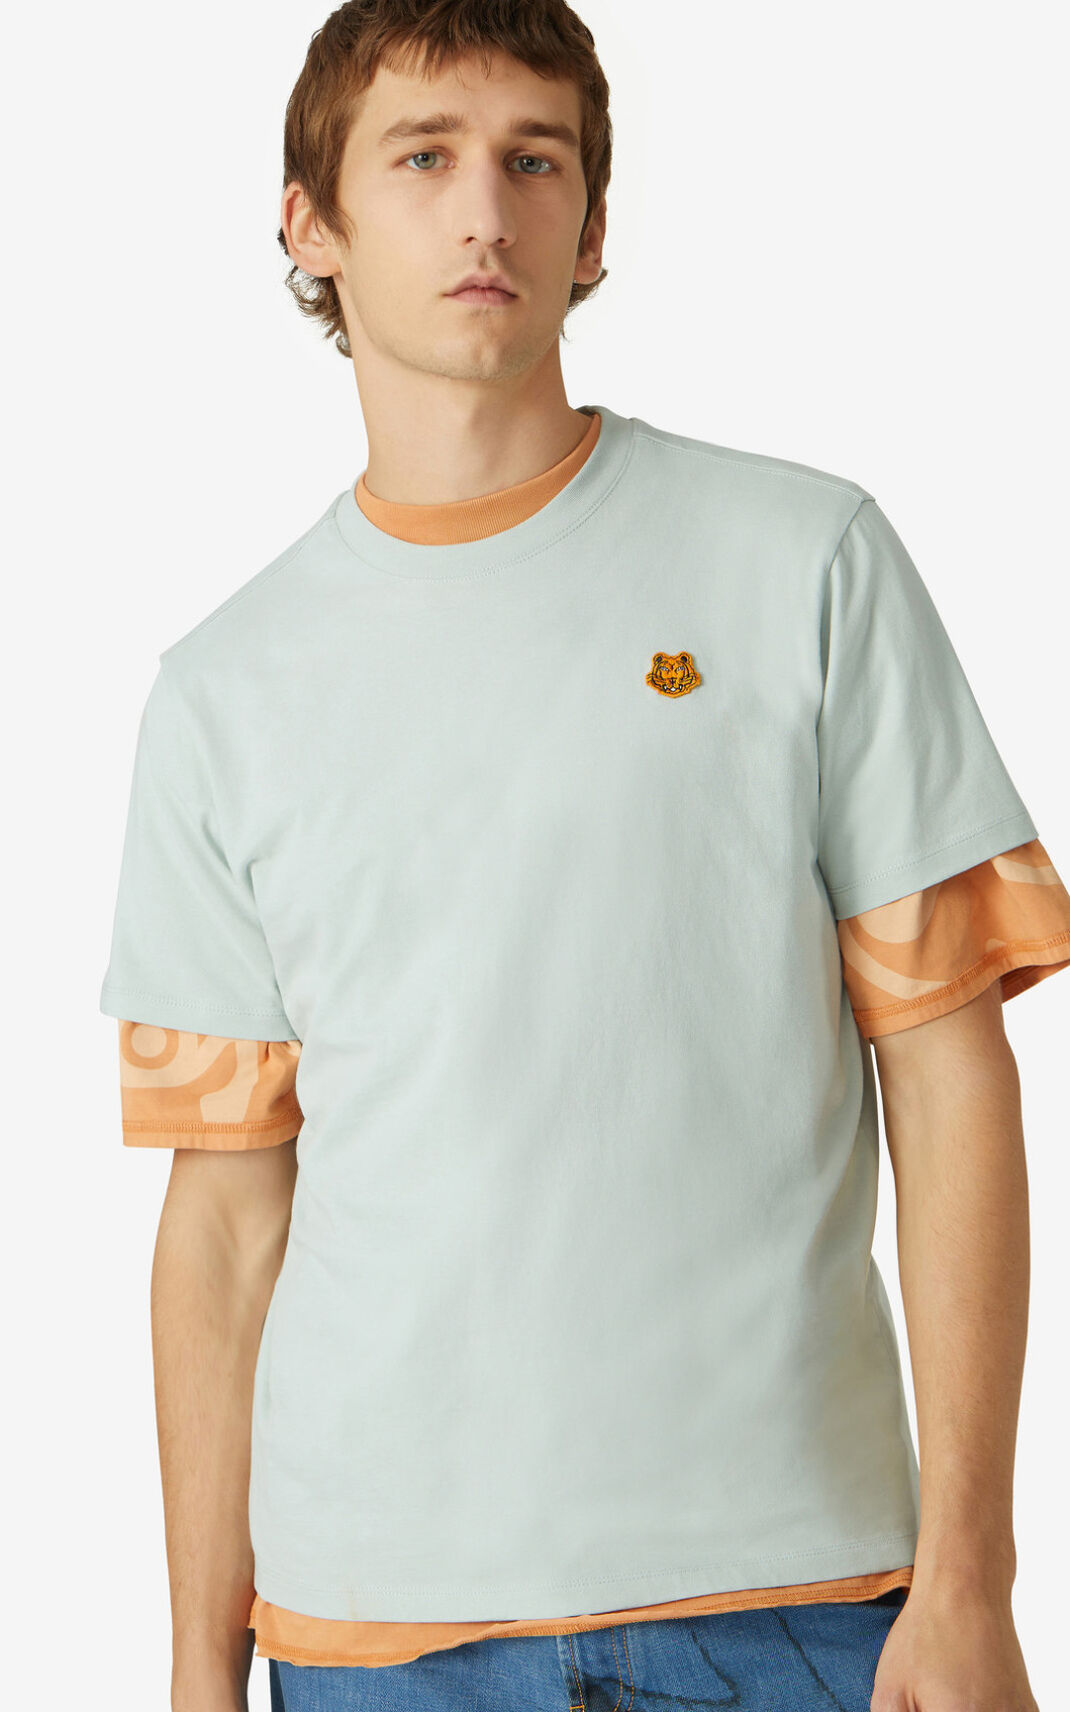 Kenzo 虎 Crest Tシャツ メンズ オリーブ 緑 - DEZTSA347